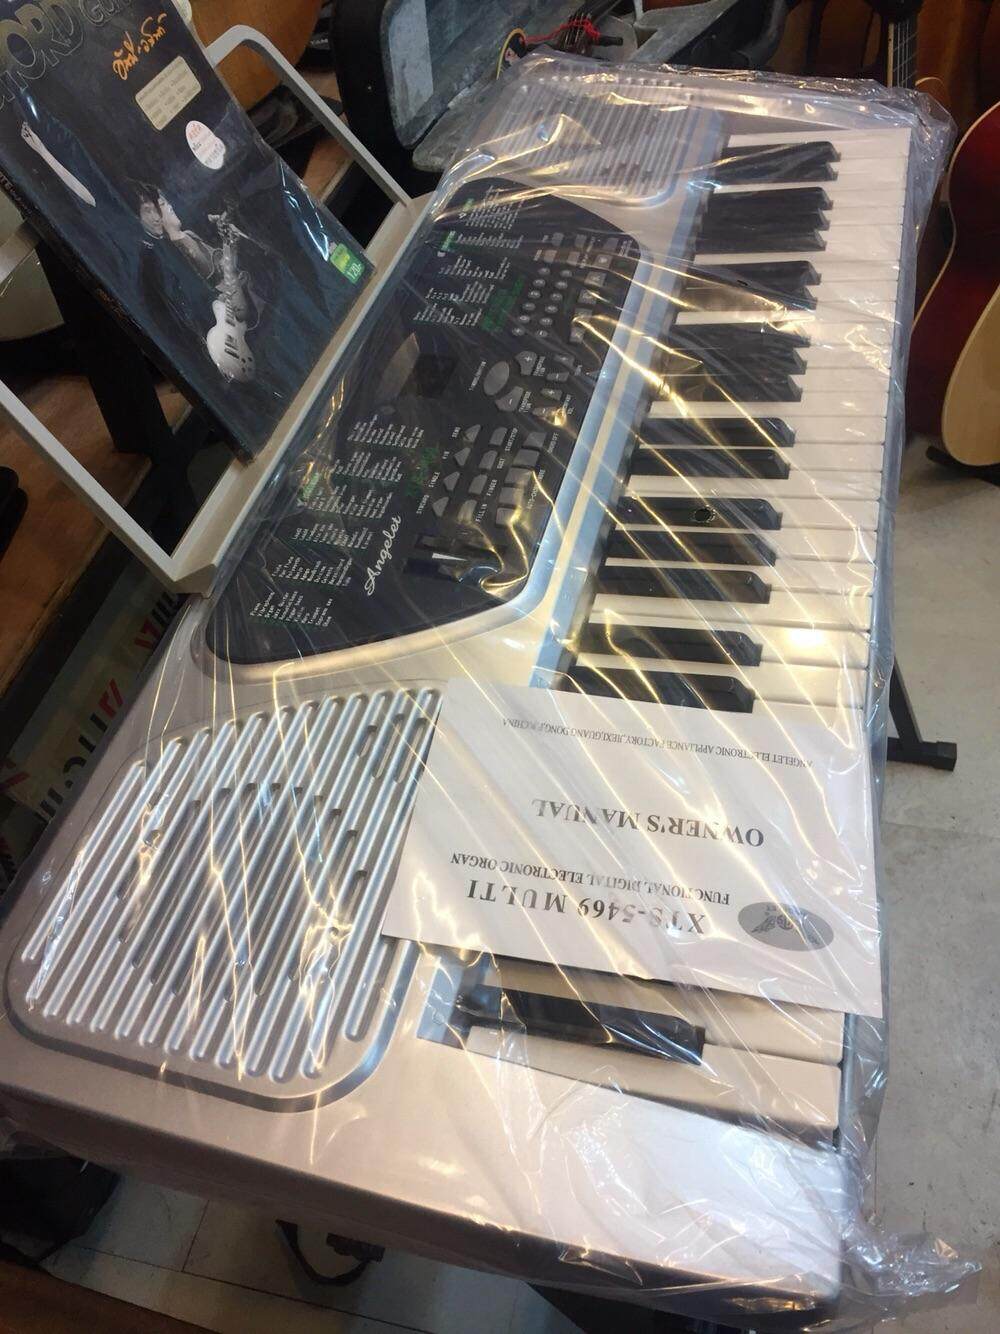 คีย์บอร์ด 54 คีย์, Keyboard, คึย์บอร์ดไฟฟ้า, คีย์บอร์ดราคาถูก, คีย์บอร์ดสำหรับหัดเล่น, คีย์บอร์ดดนตรี